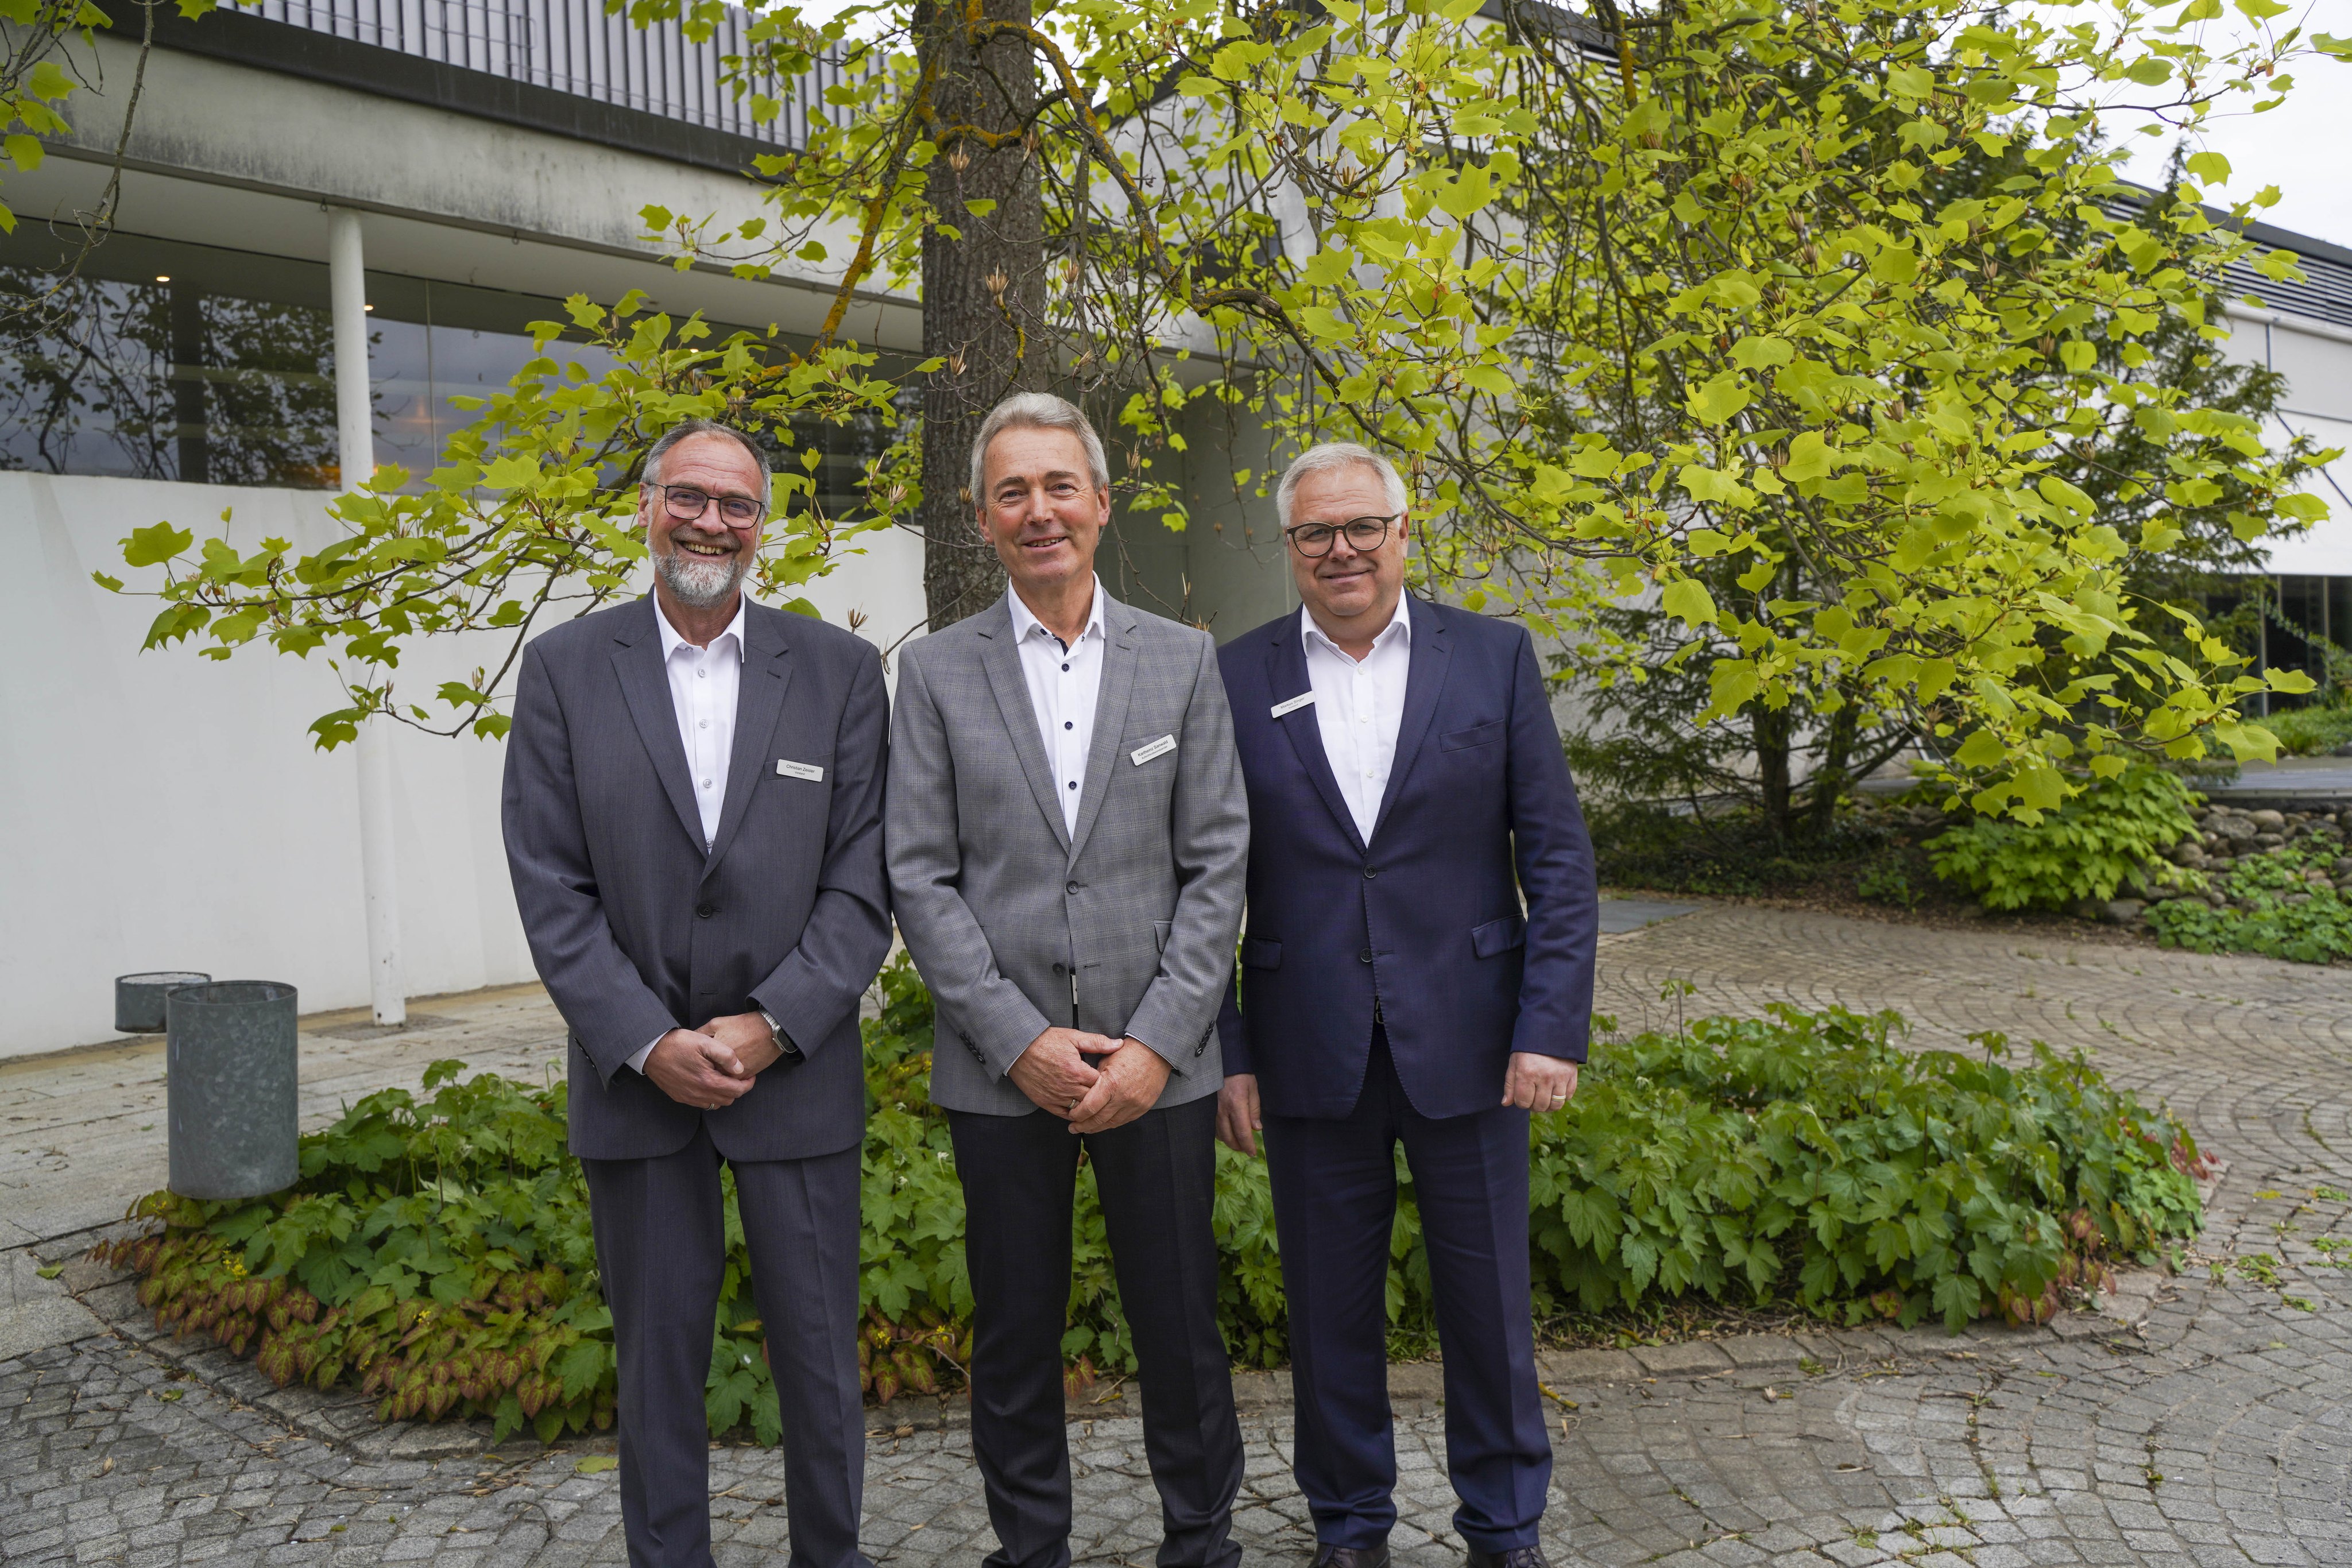 Blicken optimistisch in die Zukunft der Baugenossenschaft Sindelfingen: Aufsichtsratsvorsitzender Karlheinz Sanwald (mitte) und die beiden Vorstände Christian Zeisler (links) und Markus Singer.